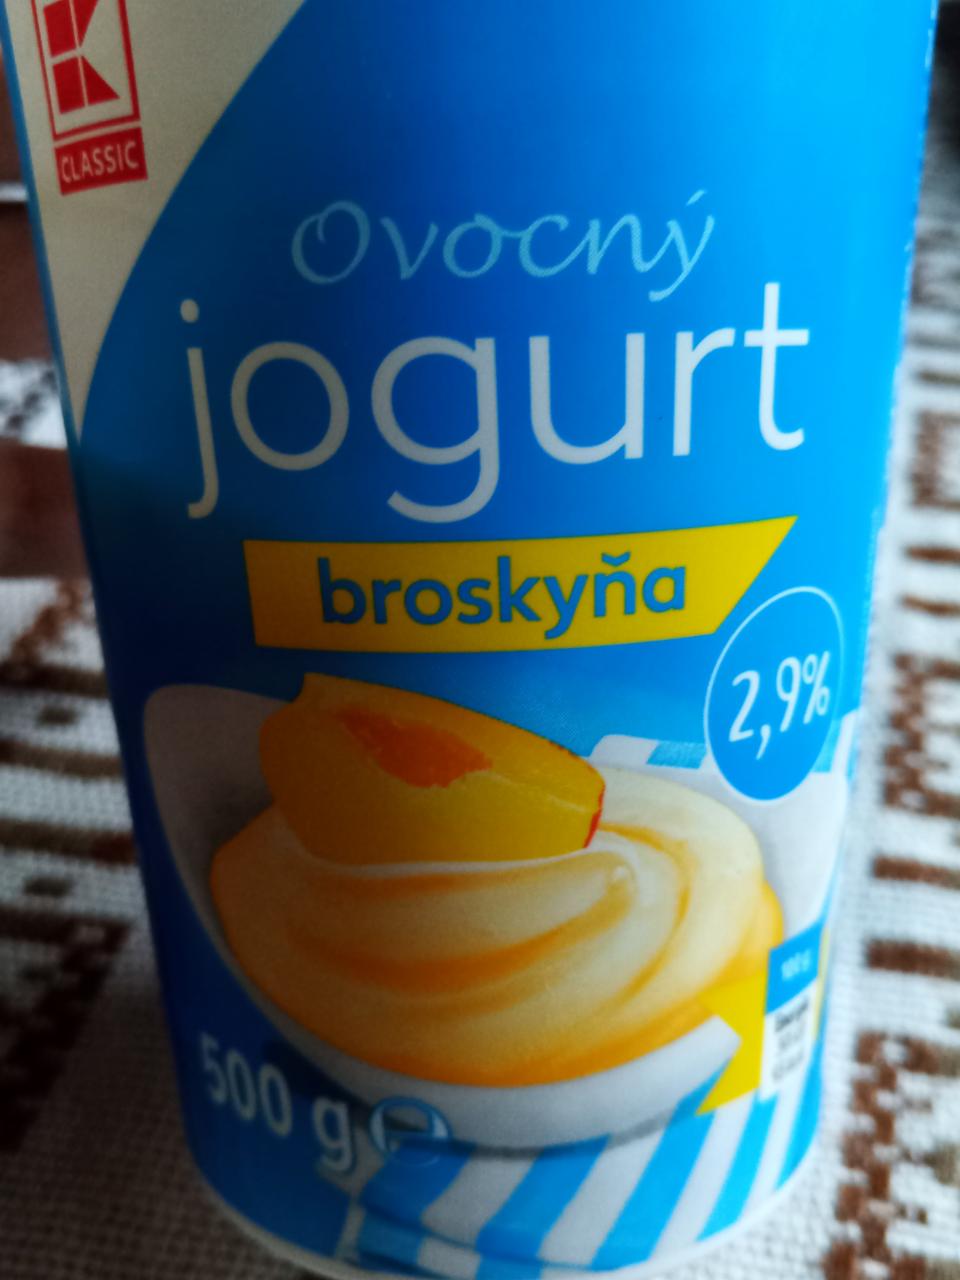 Fotografie - Ovocný jogurt broskyňa K-Classic